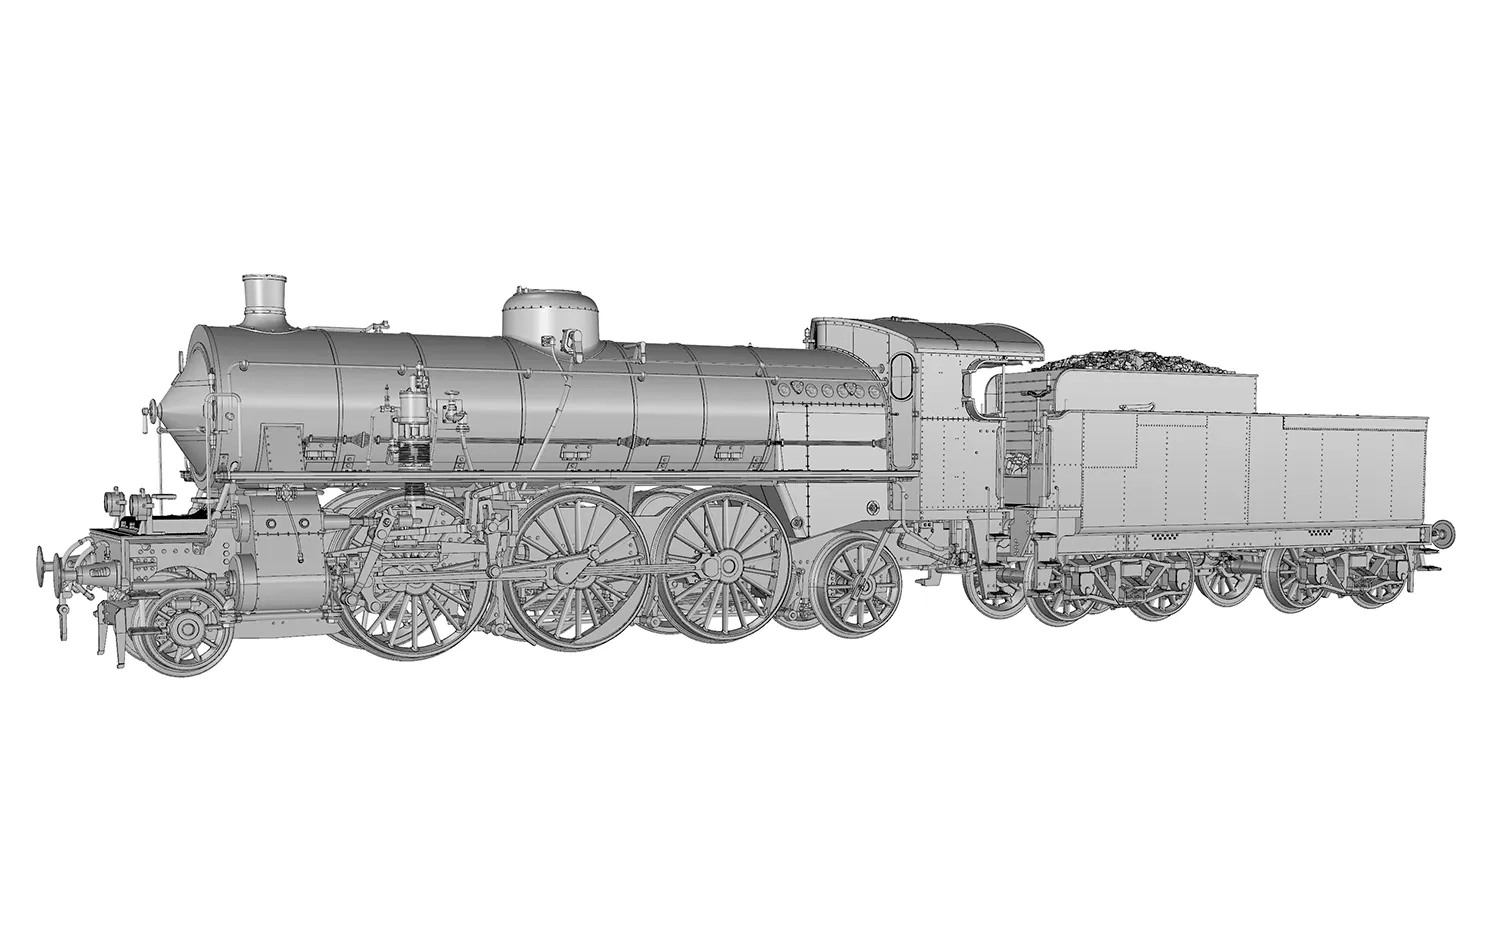 FS, Dampflokomotive Gr. 685, 1. Serie, mit kurzem Kessel und elektrischen Lampen, Ep. III